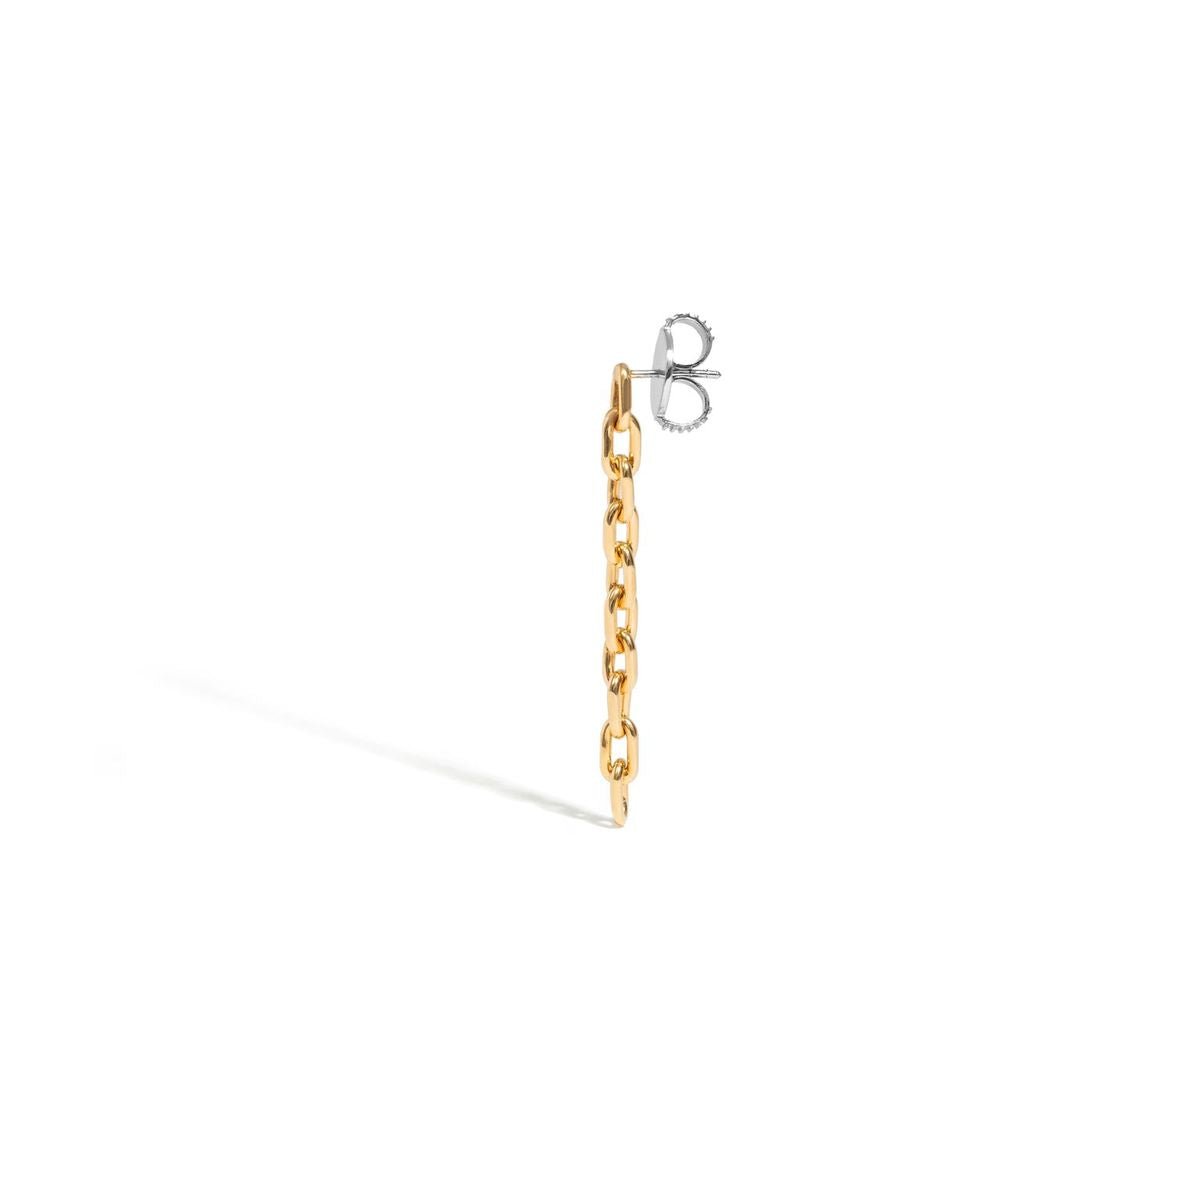 Brinco Chain - Unitário | Prata Com Ouro Amarelo 18k - Jack Vartanian - Longos E Franjas